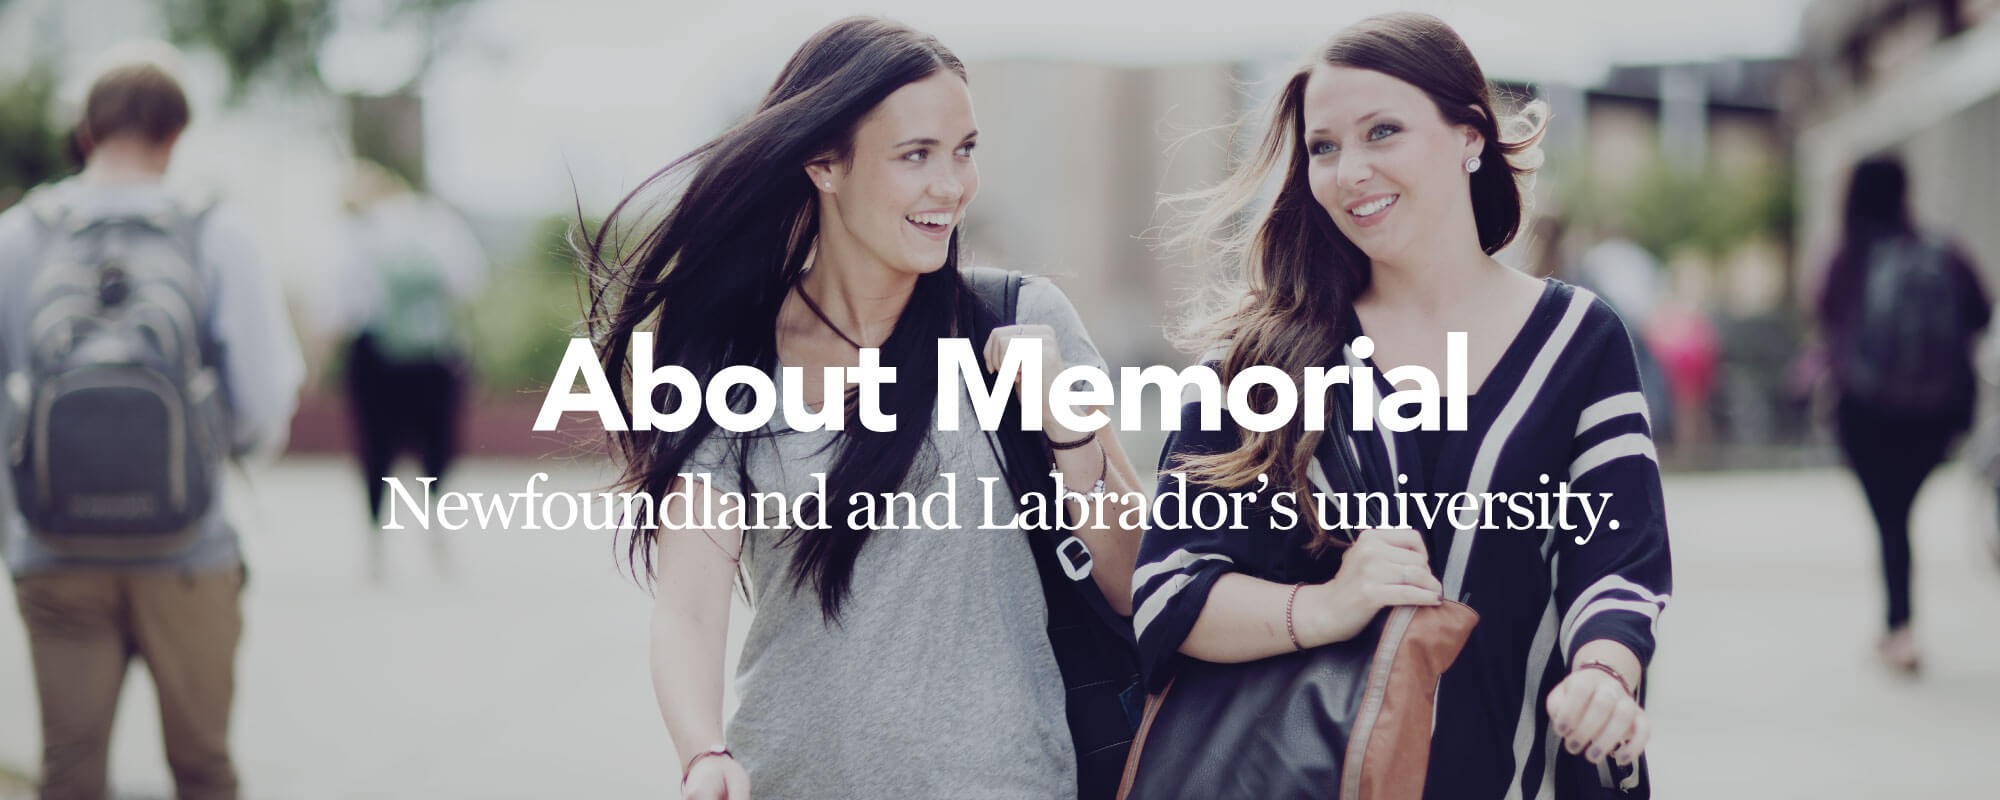 Newfoundland and Labrador's University Logo